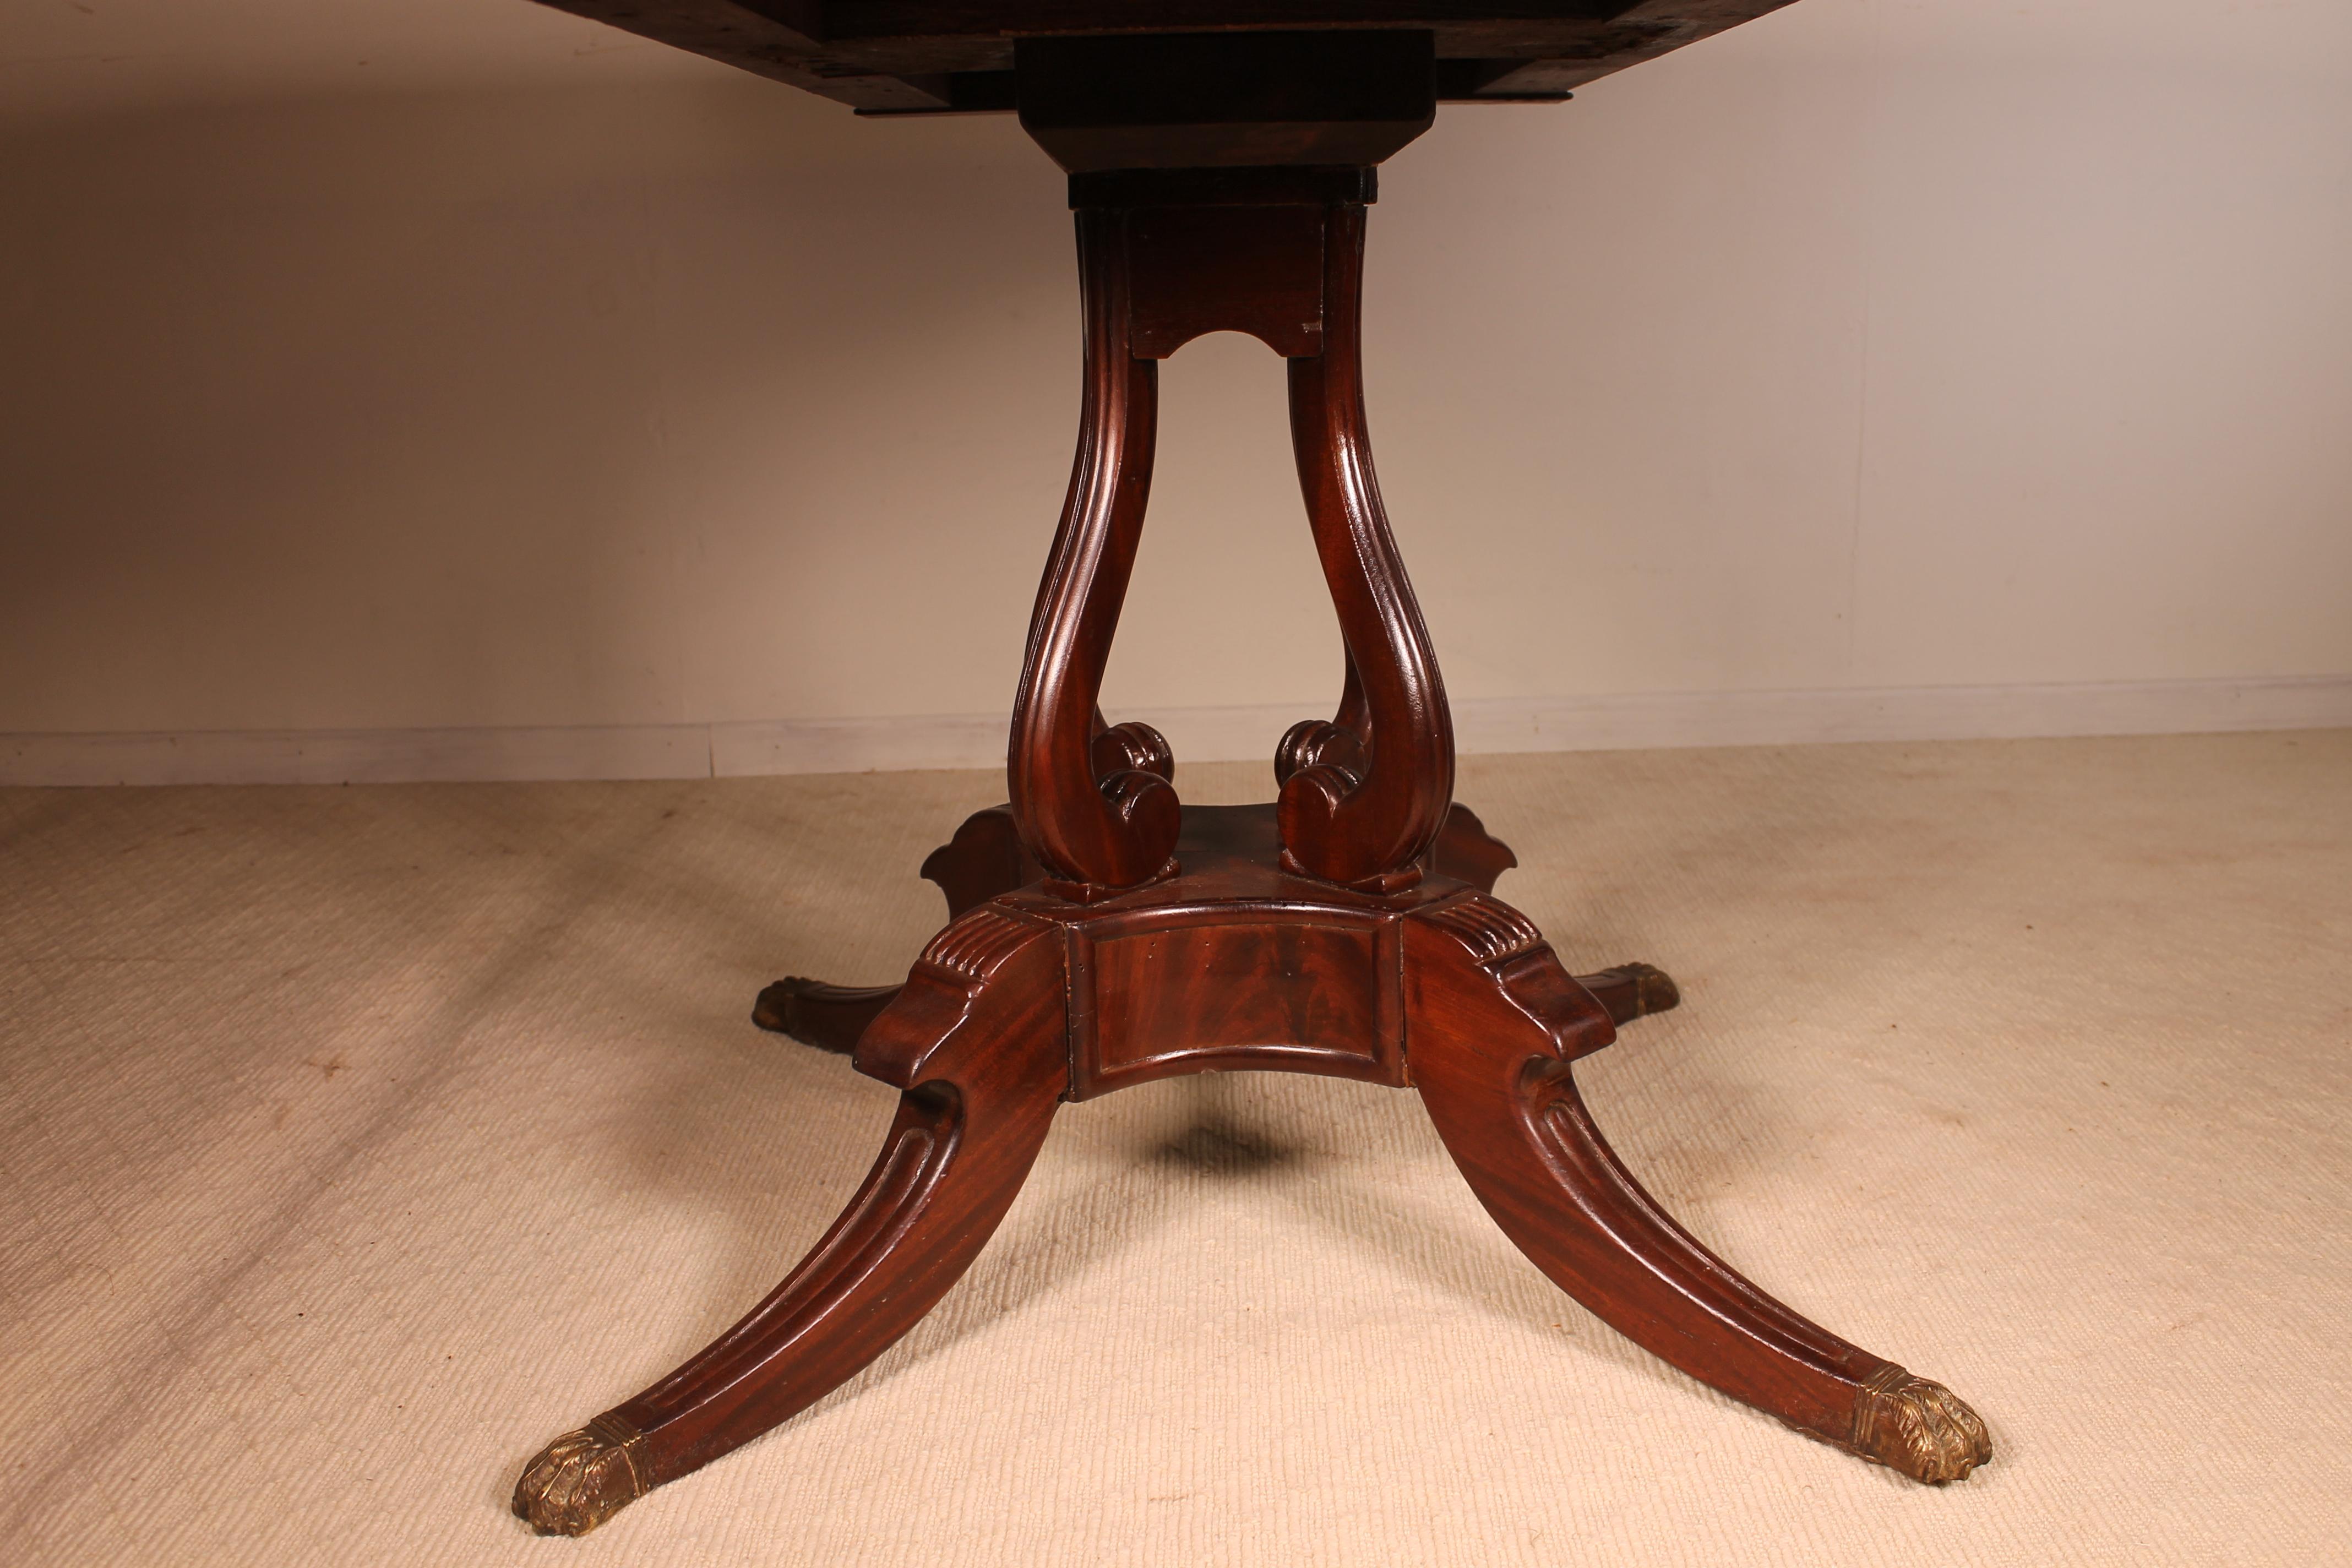 Une très belle table Régence Pembroke en acajou datant de la première partie du 19ème siècle vers 1820.
Cette belle pièce ancienne a un très beau plateau en acajou massif qui repose sur quatre montants cannelés sur une base quadripartite. La base